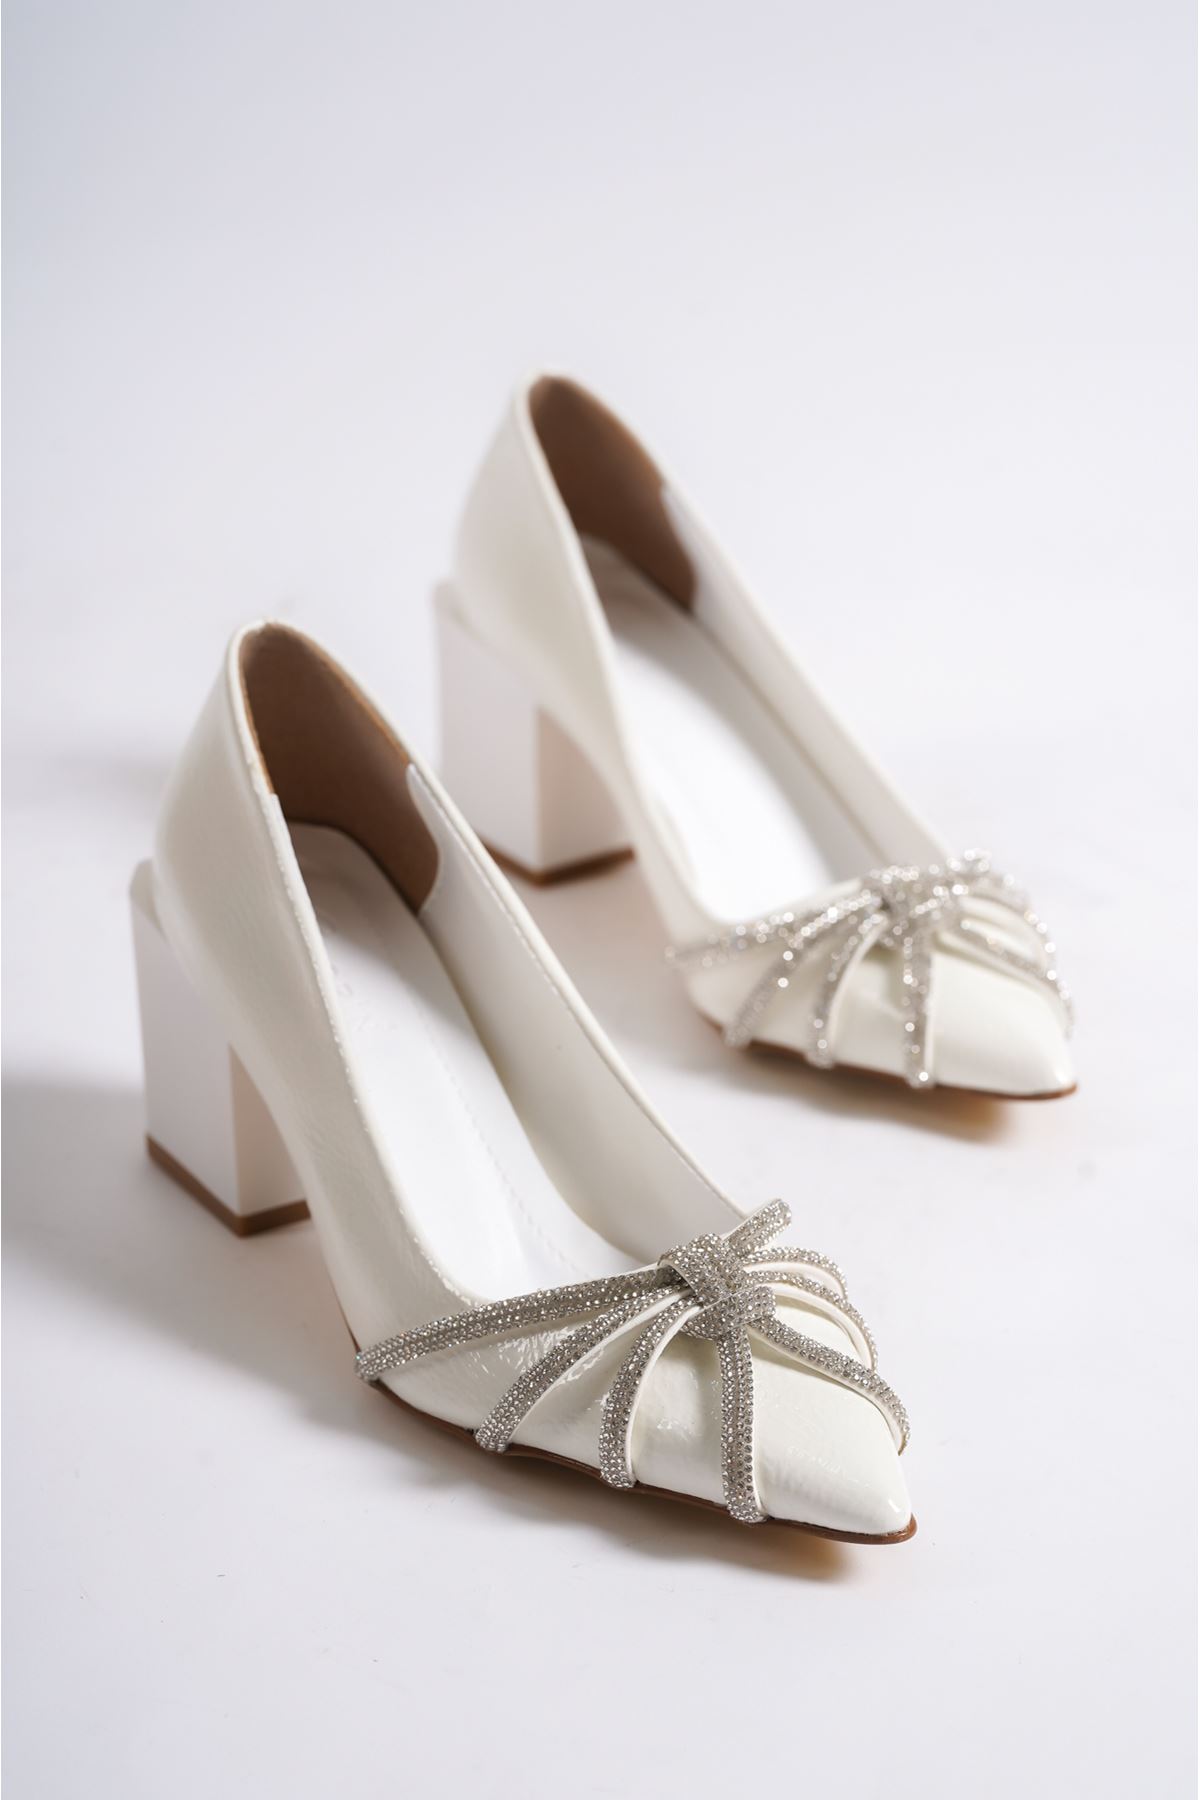 Charler Beyaz Rugan Topuklu Kadın Ayakkabı